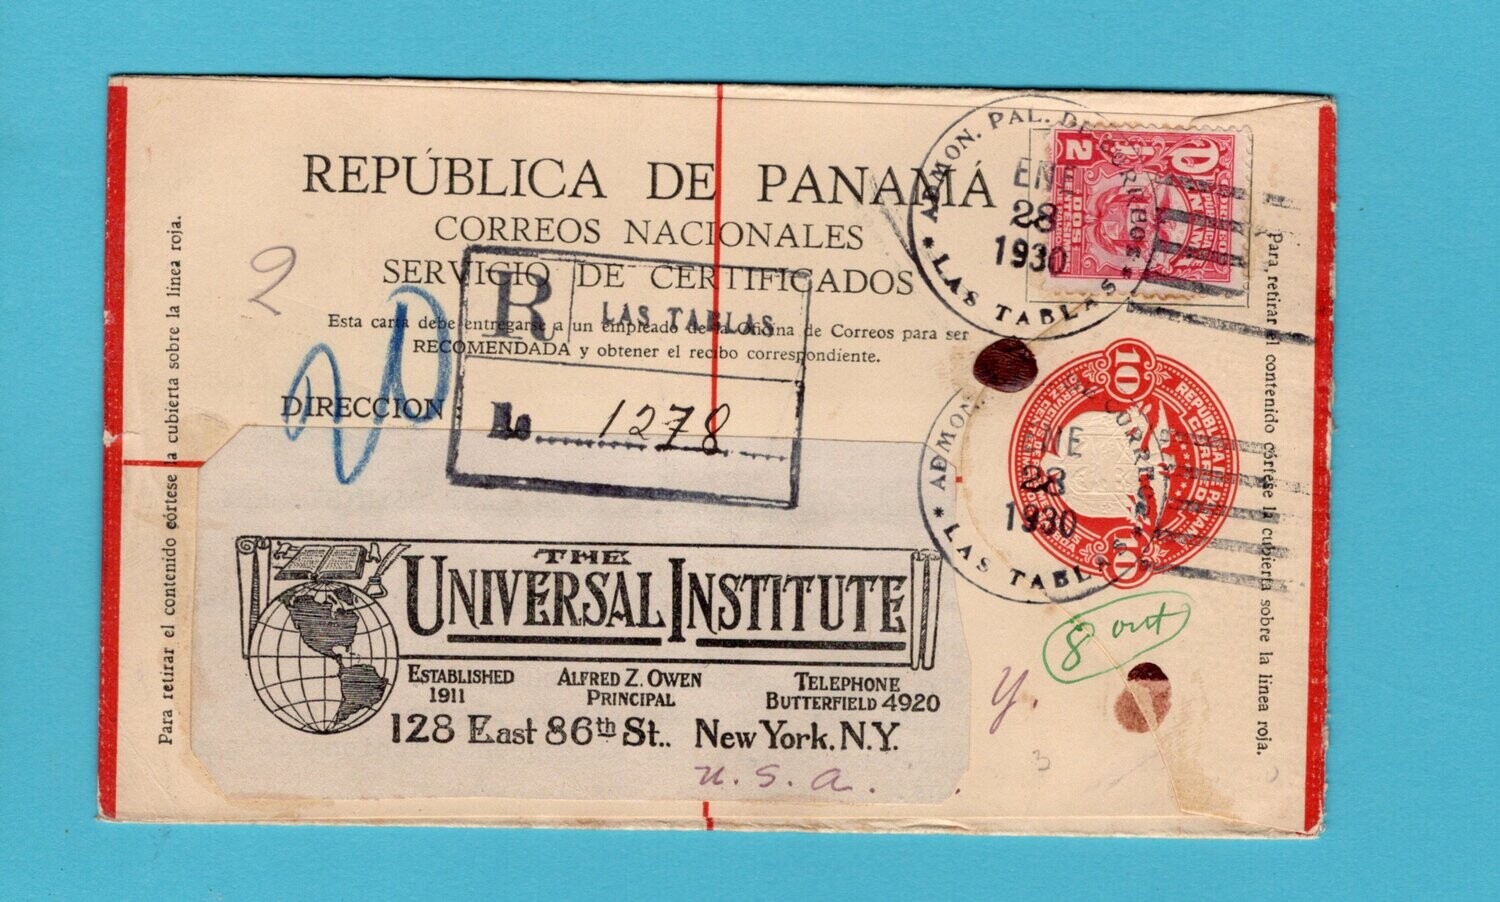 PANAMA R postal envelope 1930 Las Tablas to New York